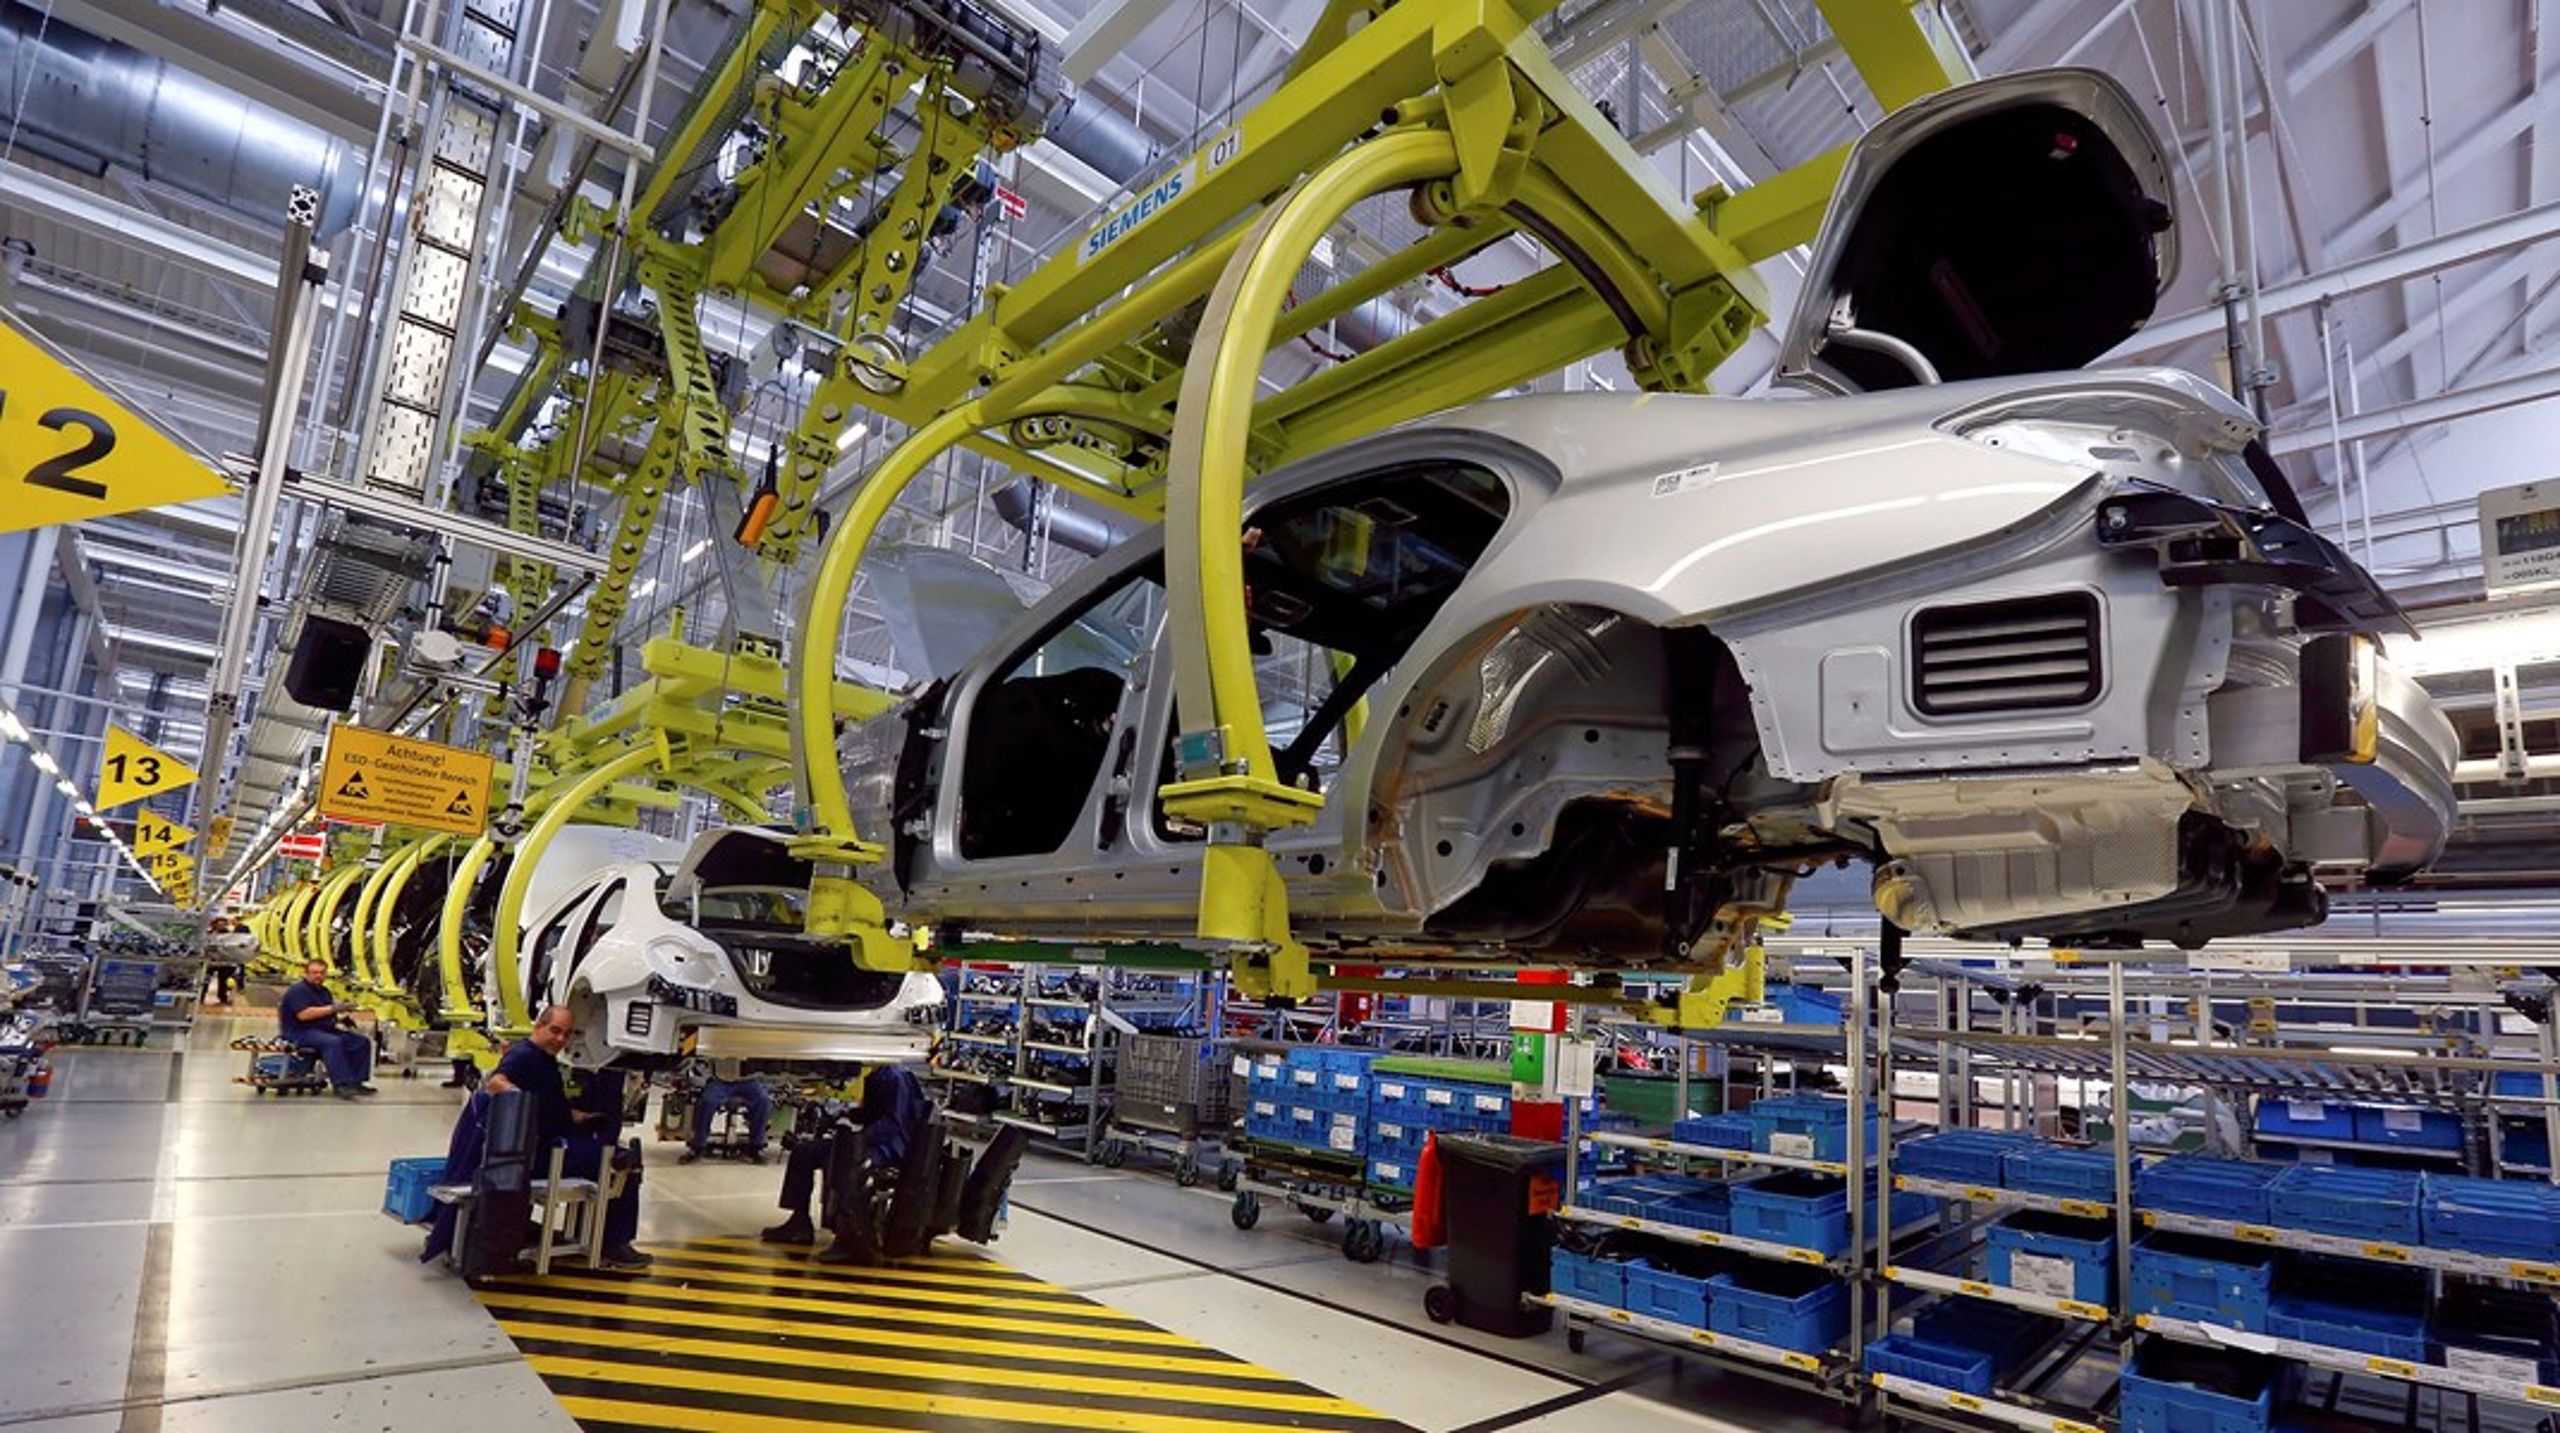 Tyskland er Danmarks største importmarked, og biler er et af de produkter, som Danmark handler stort ind af. Her billede fra Mercedes-Benz' fabrik i Stuttgart.